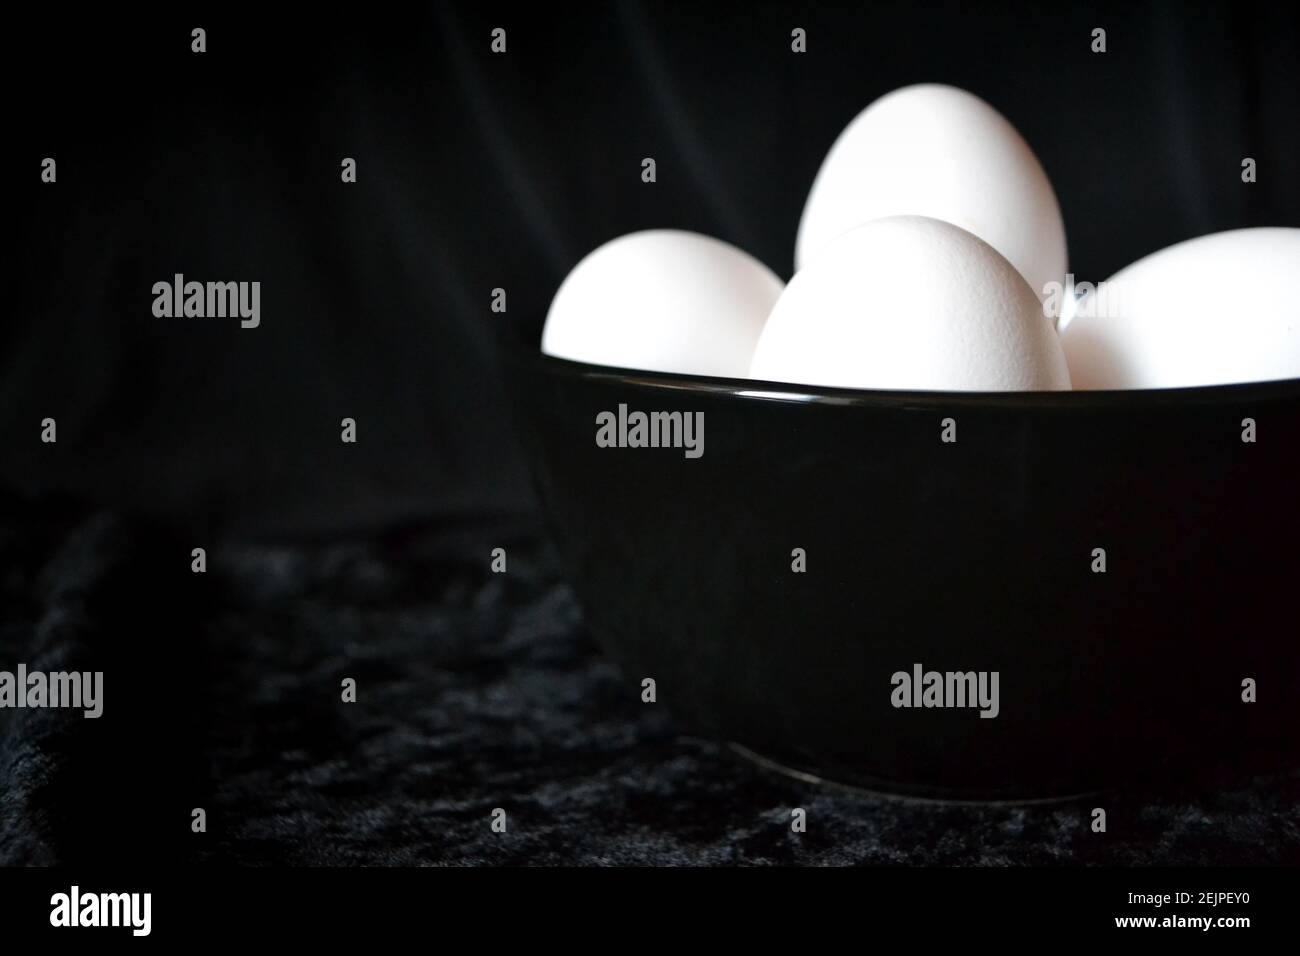 Weiße Eier innen schwarze Platte vor schwarzem Hintergrund Stockfoto